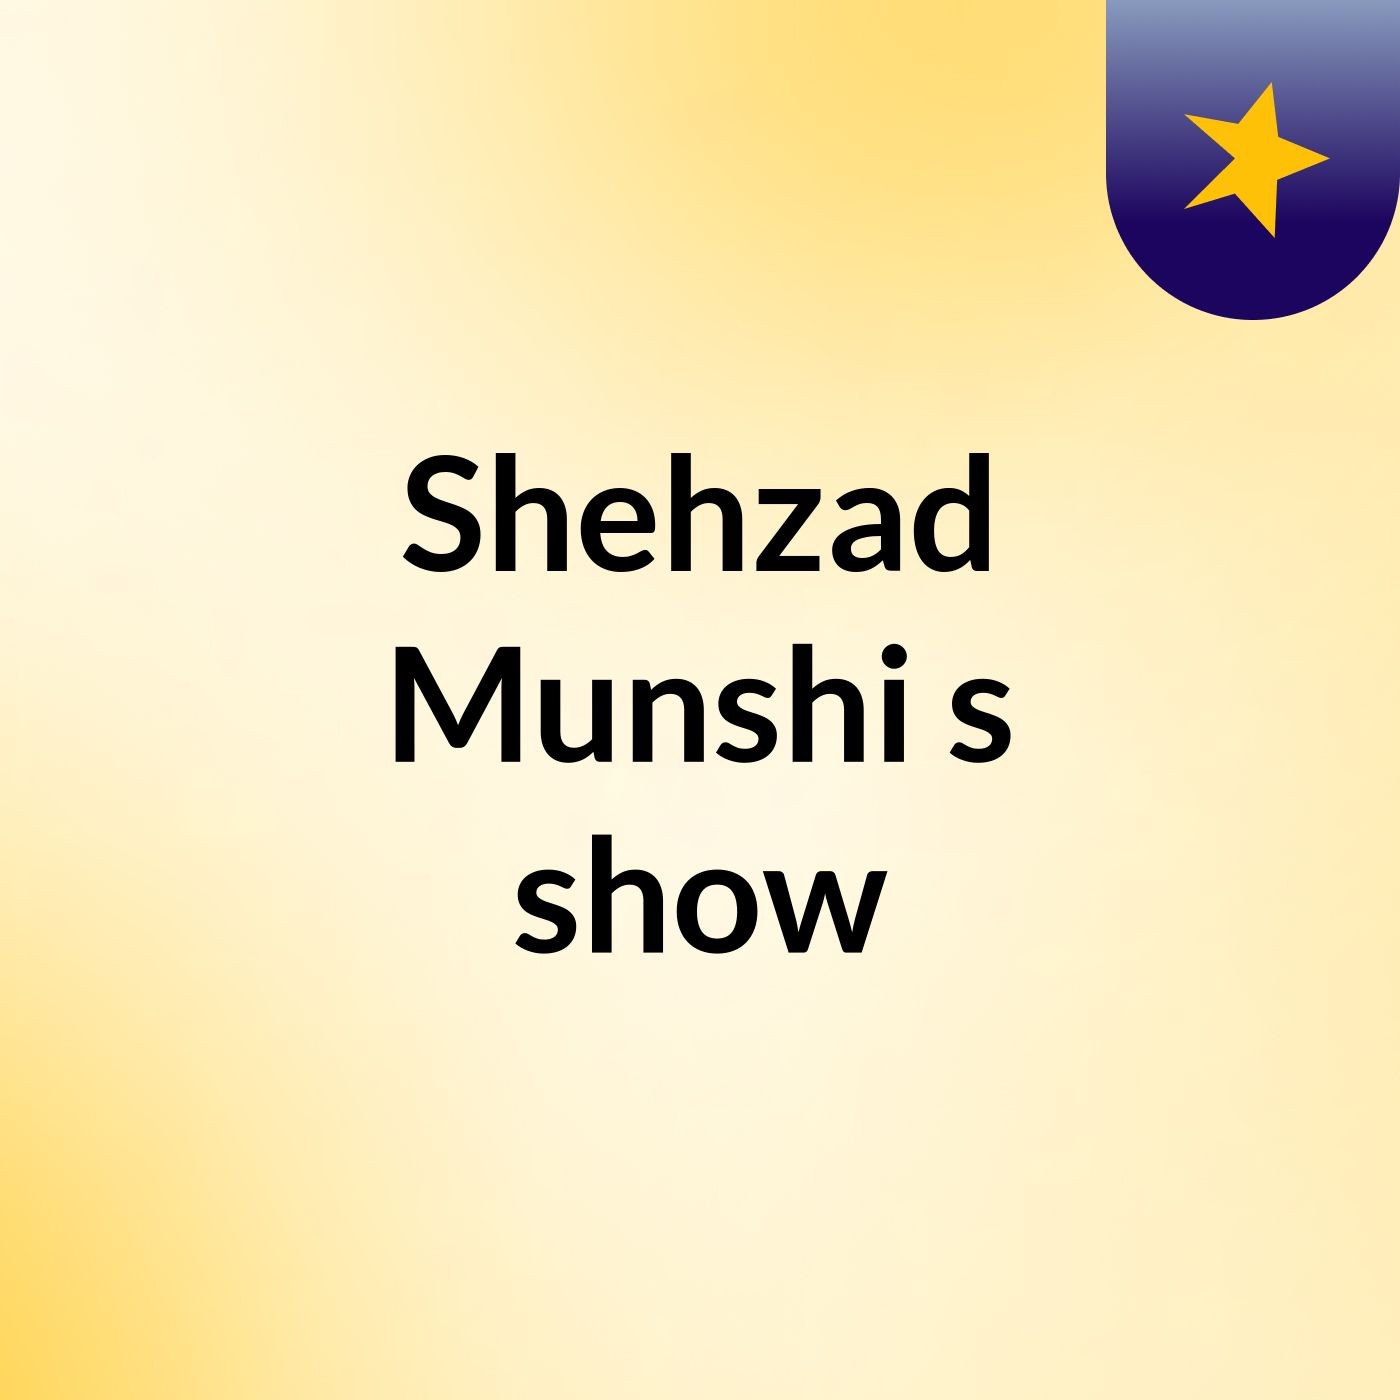 Shehzad Munshi's show